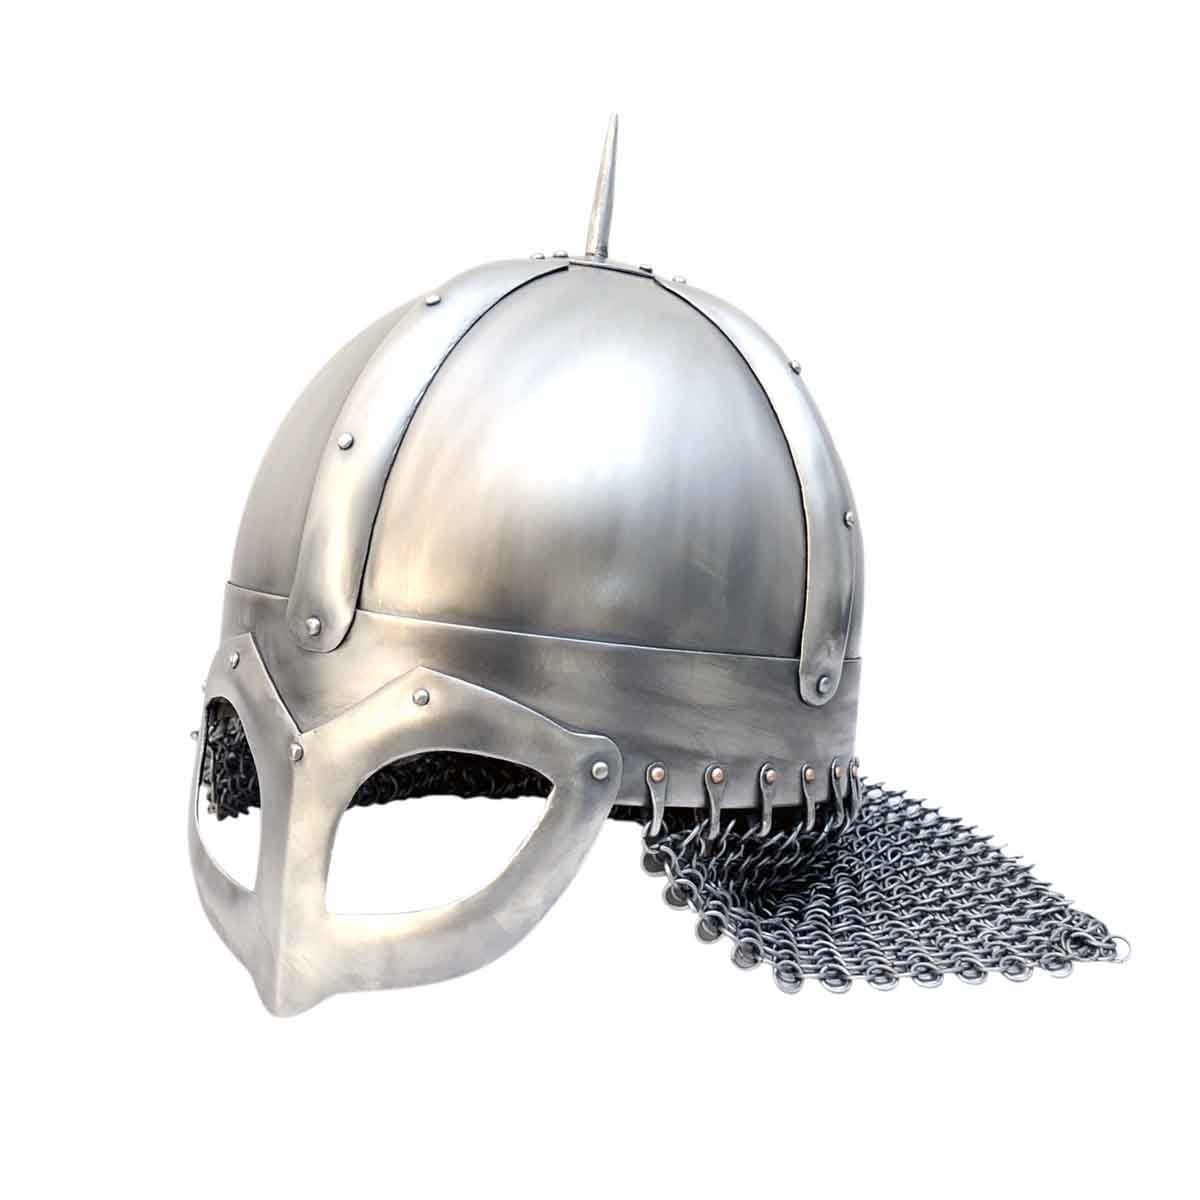 The Gjermundbu helmet-970 AD, Size L